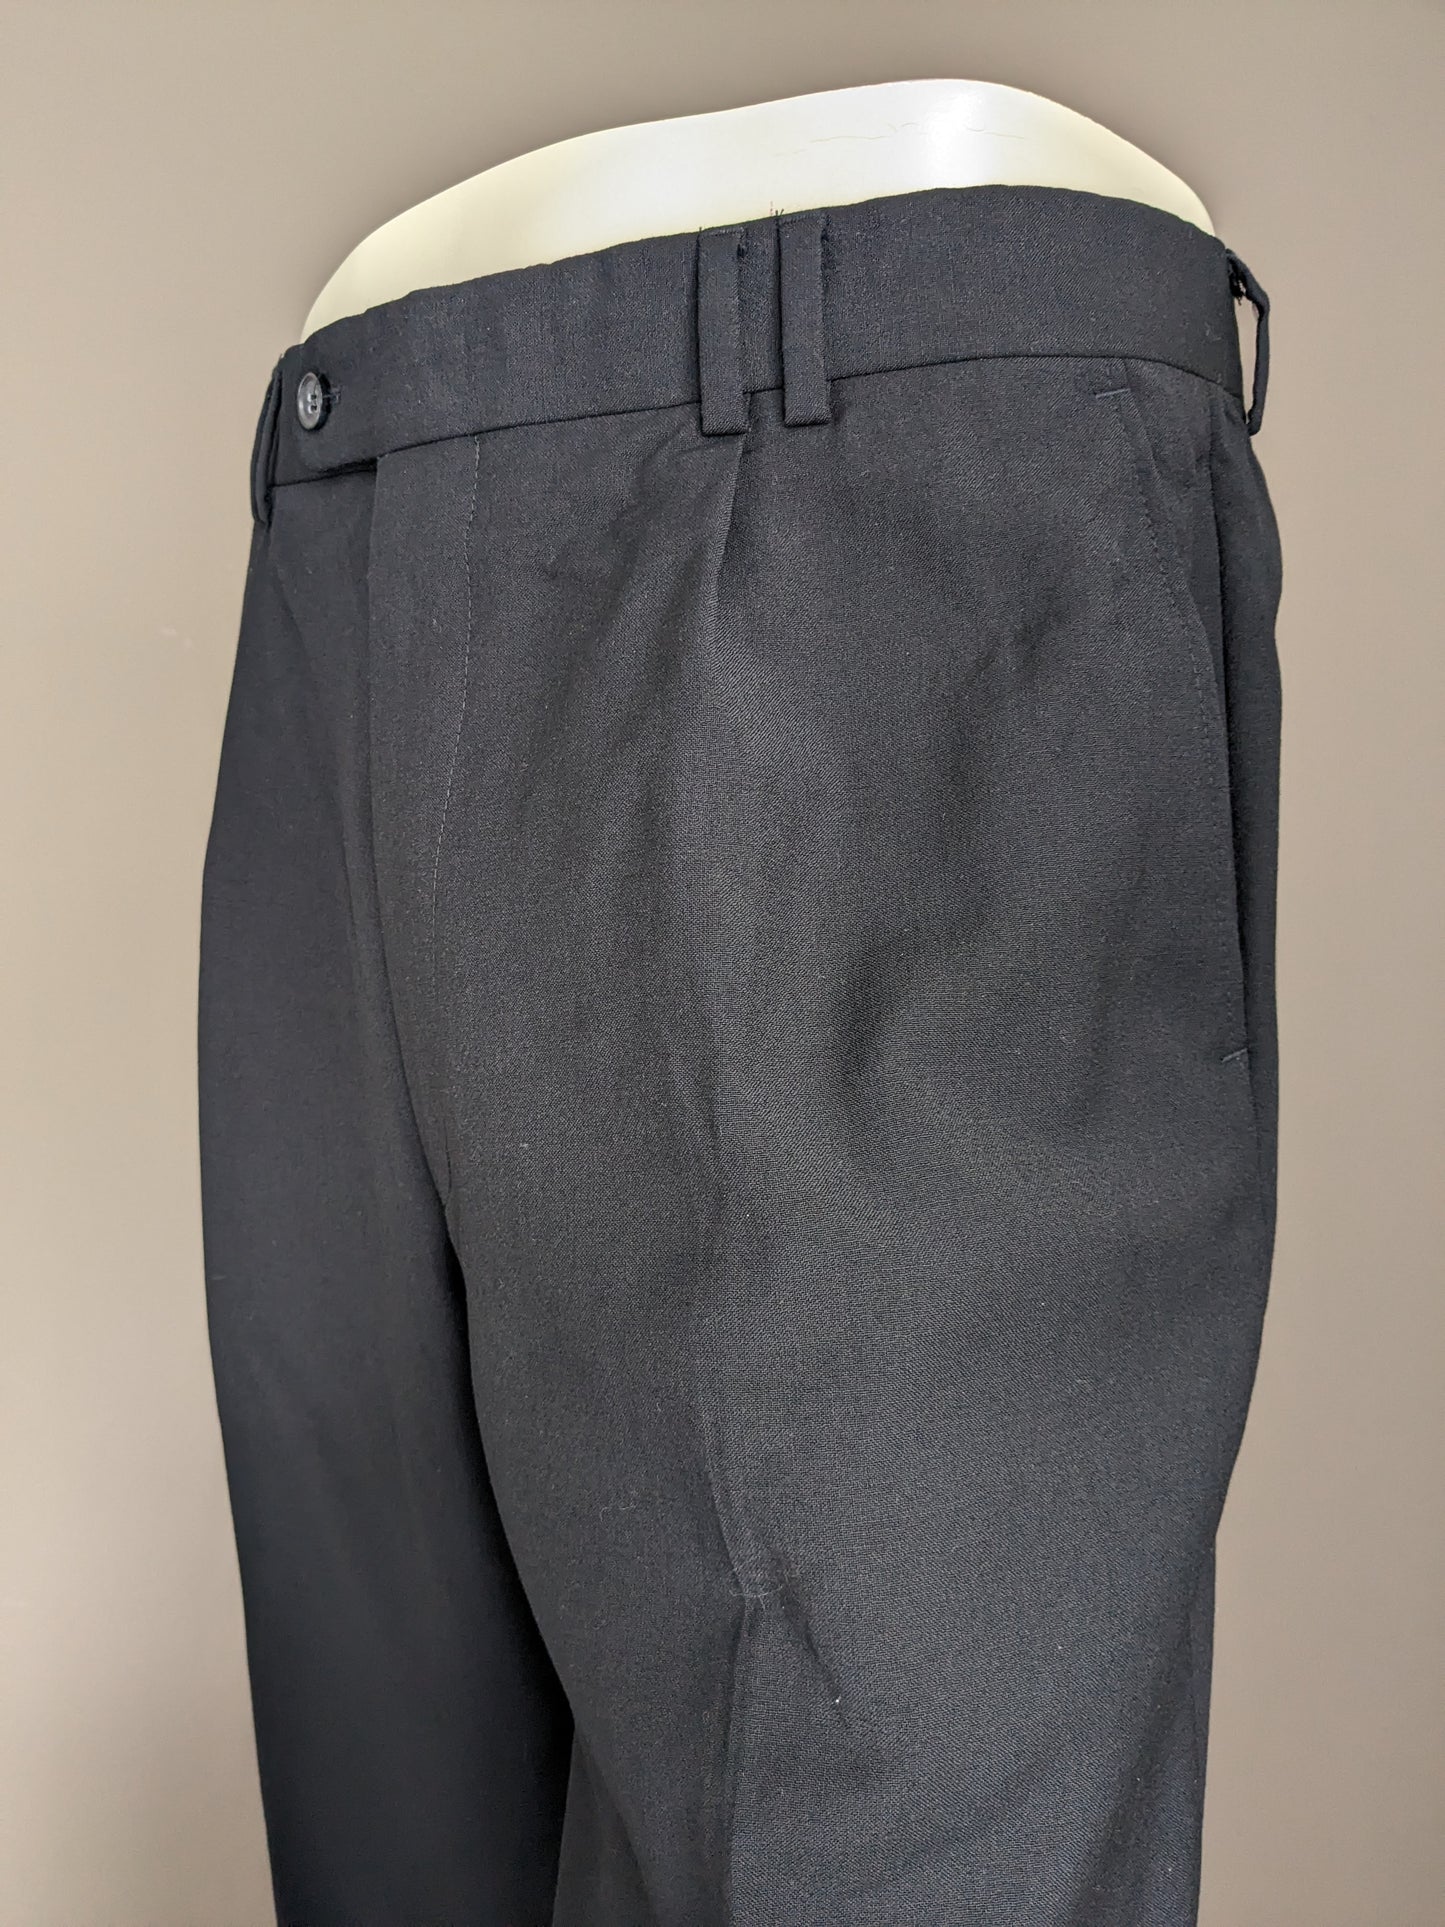 Pantalon en laine avec couverture. Couleur bleu foncé. Taille 52 / L. # 500.